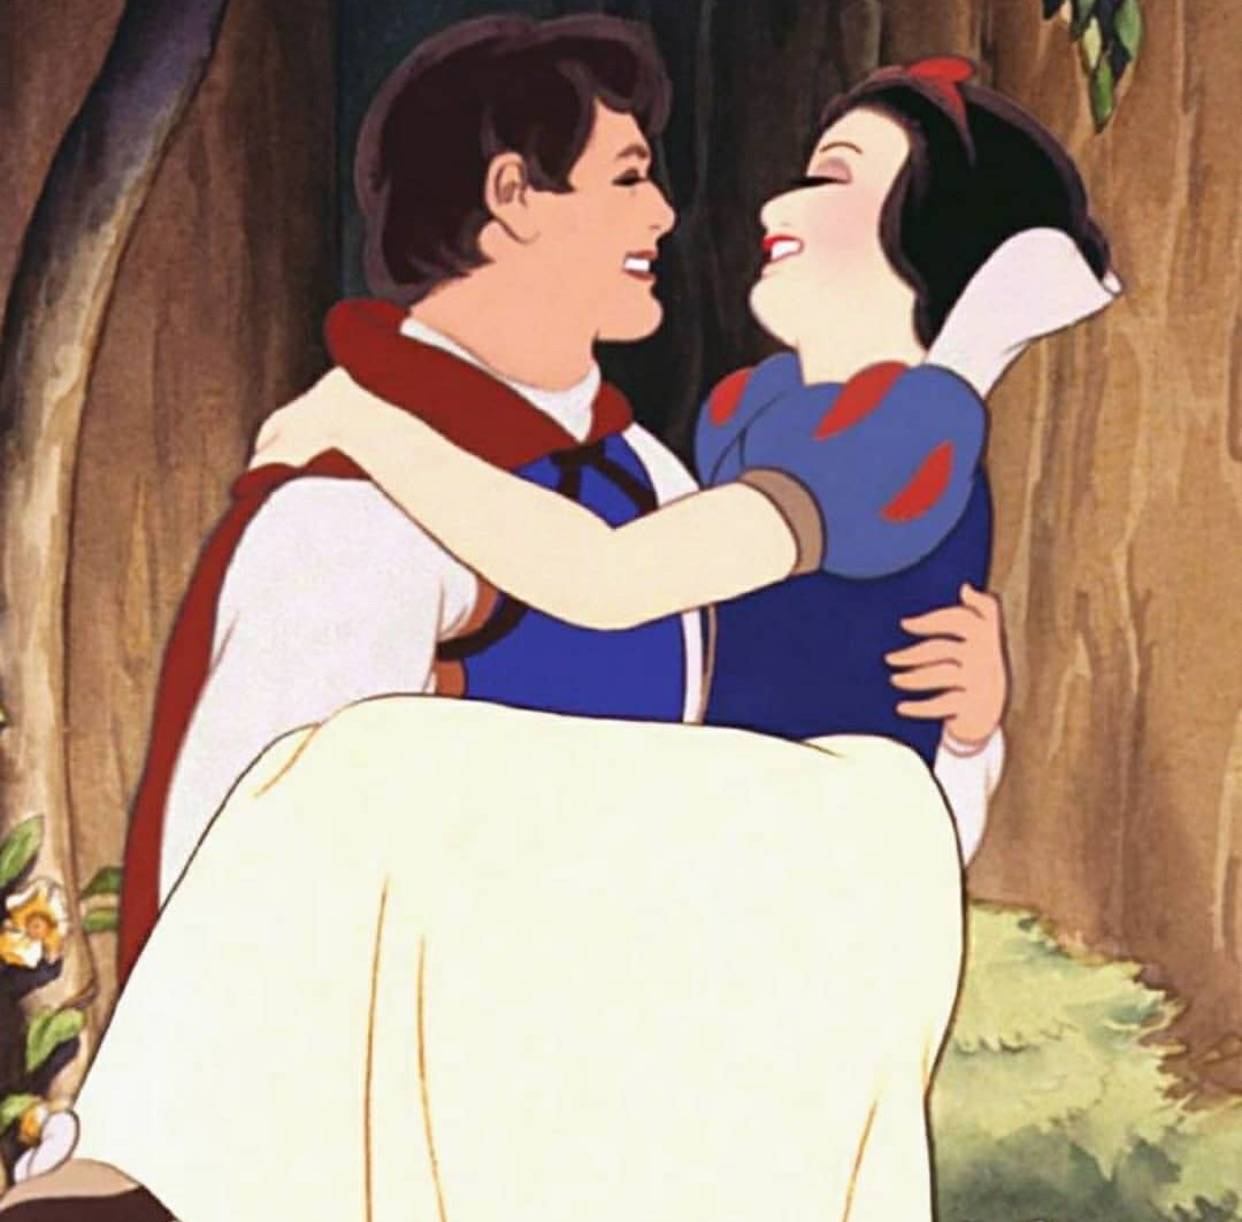 迪士尼公主与王子情侣头像( •̆ ᵕ •̆ ) ♡__财经头条